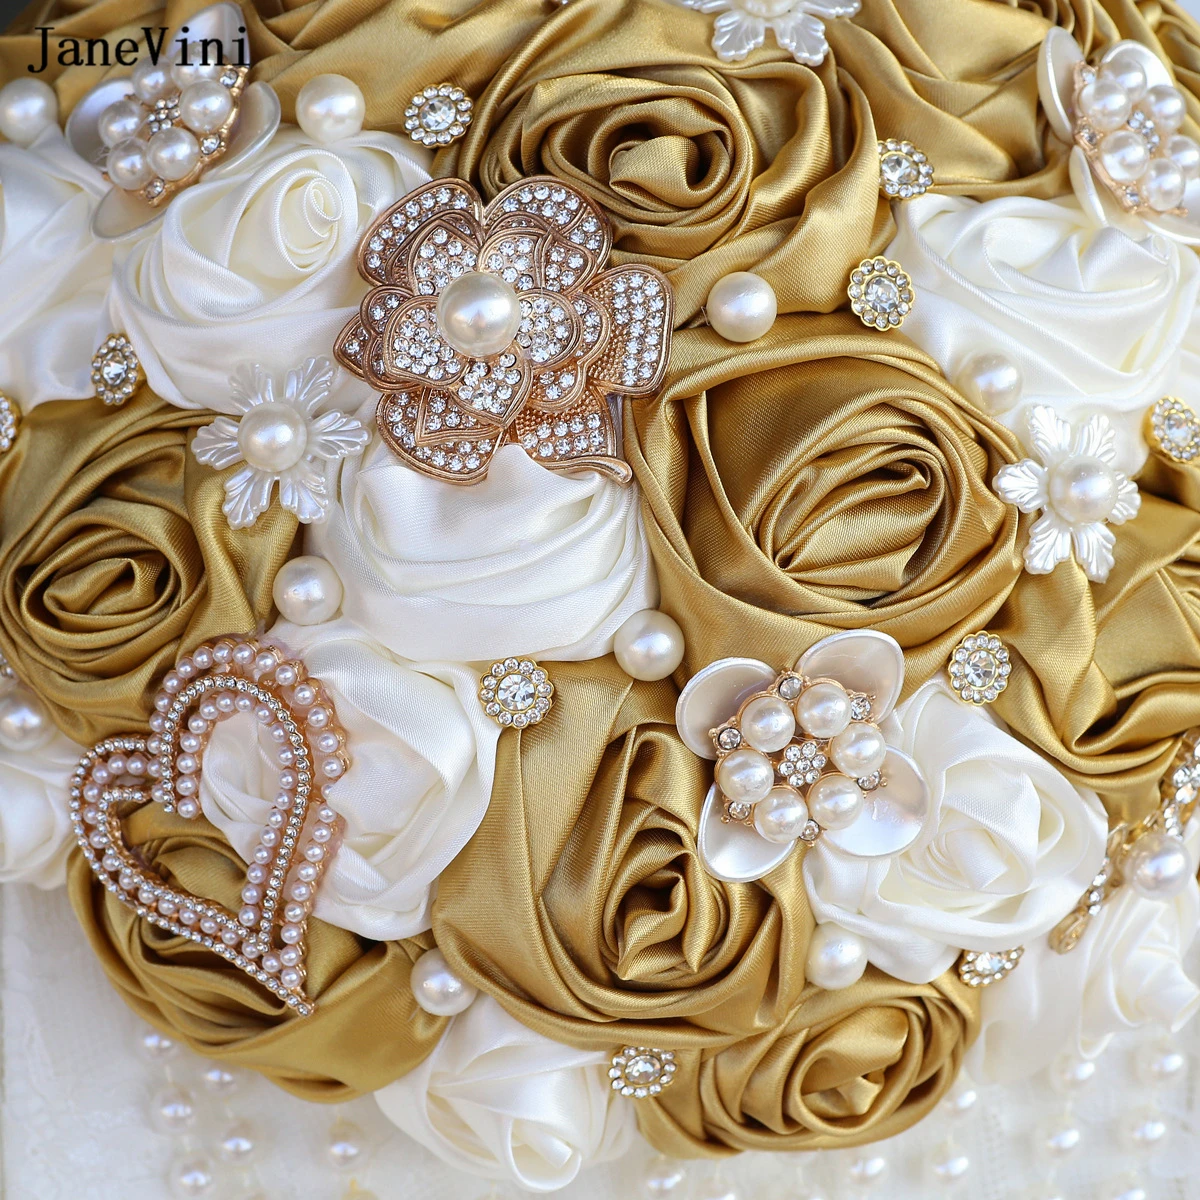 JaneVini Luxury Light Gold Ivory Flowers Bridal Saugh Bouquets Pearls Artificial Satin Roses Rhinestone Papuošalai Vestuvių puokštė